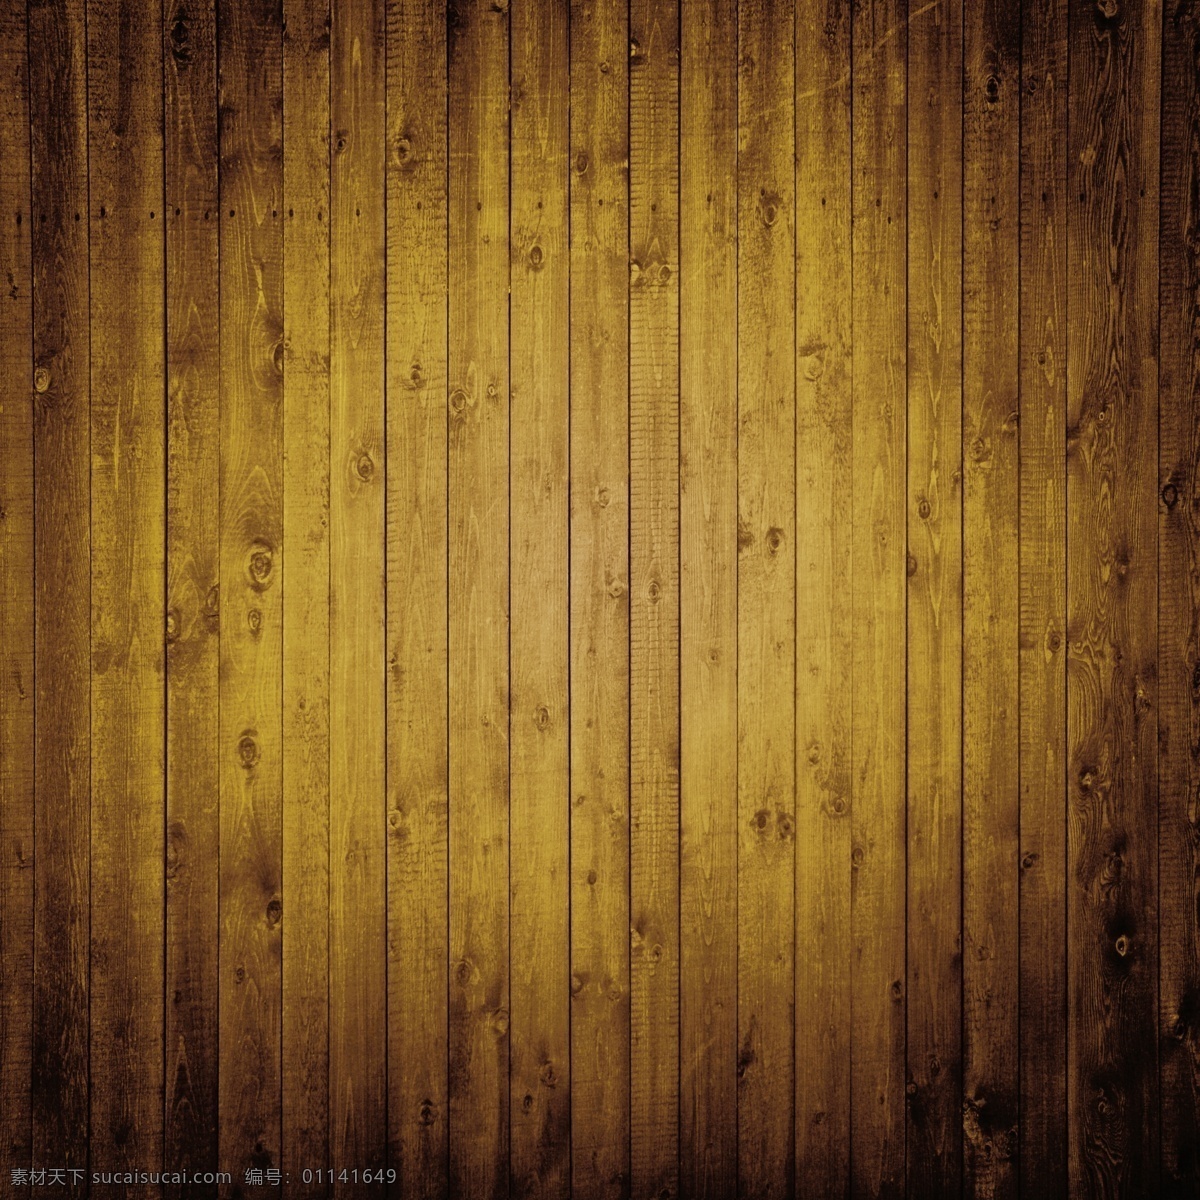 木板背景 木板 木纹 木地板 彩色木板 木质纹理 wood 手绘木板 逼真木板 底纹边框 背景底纹